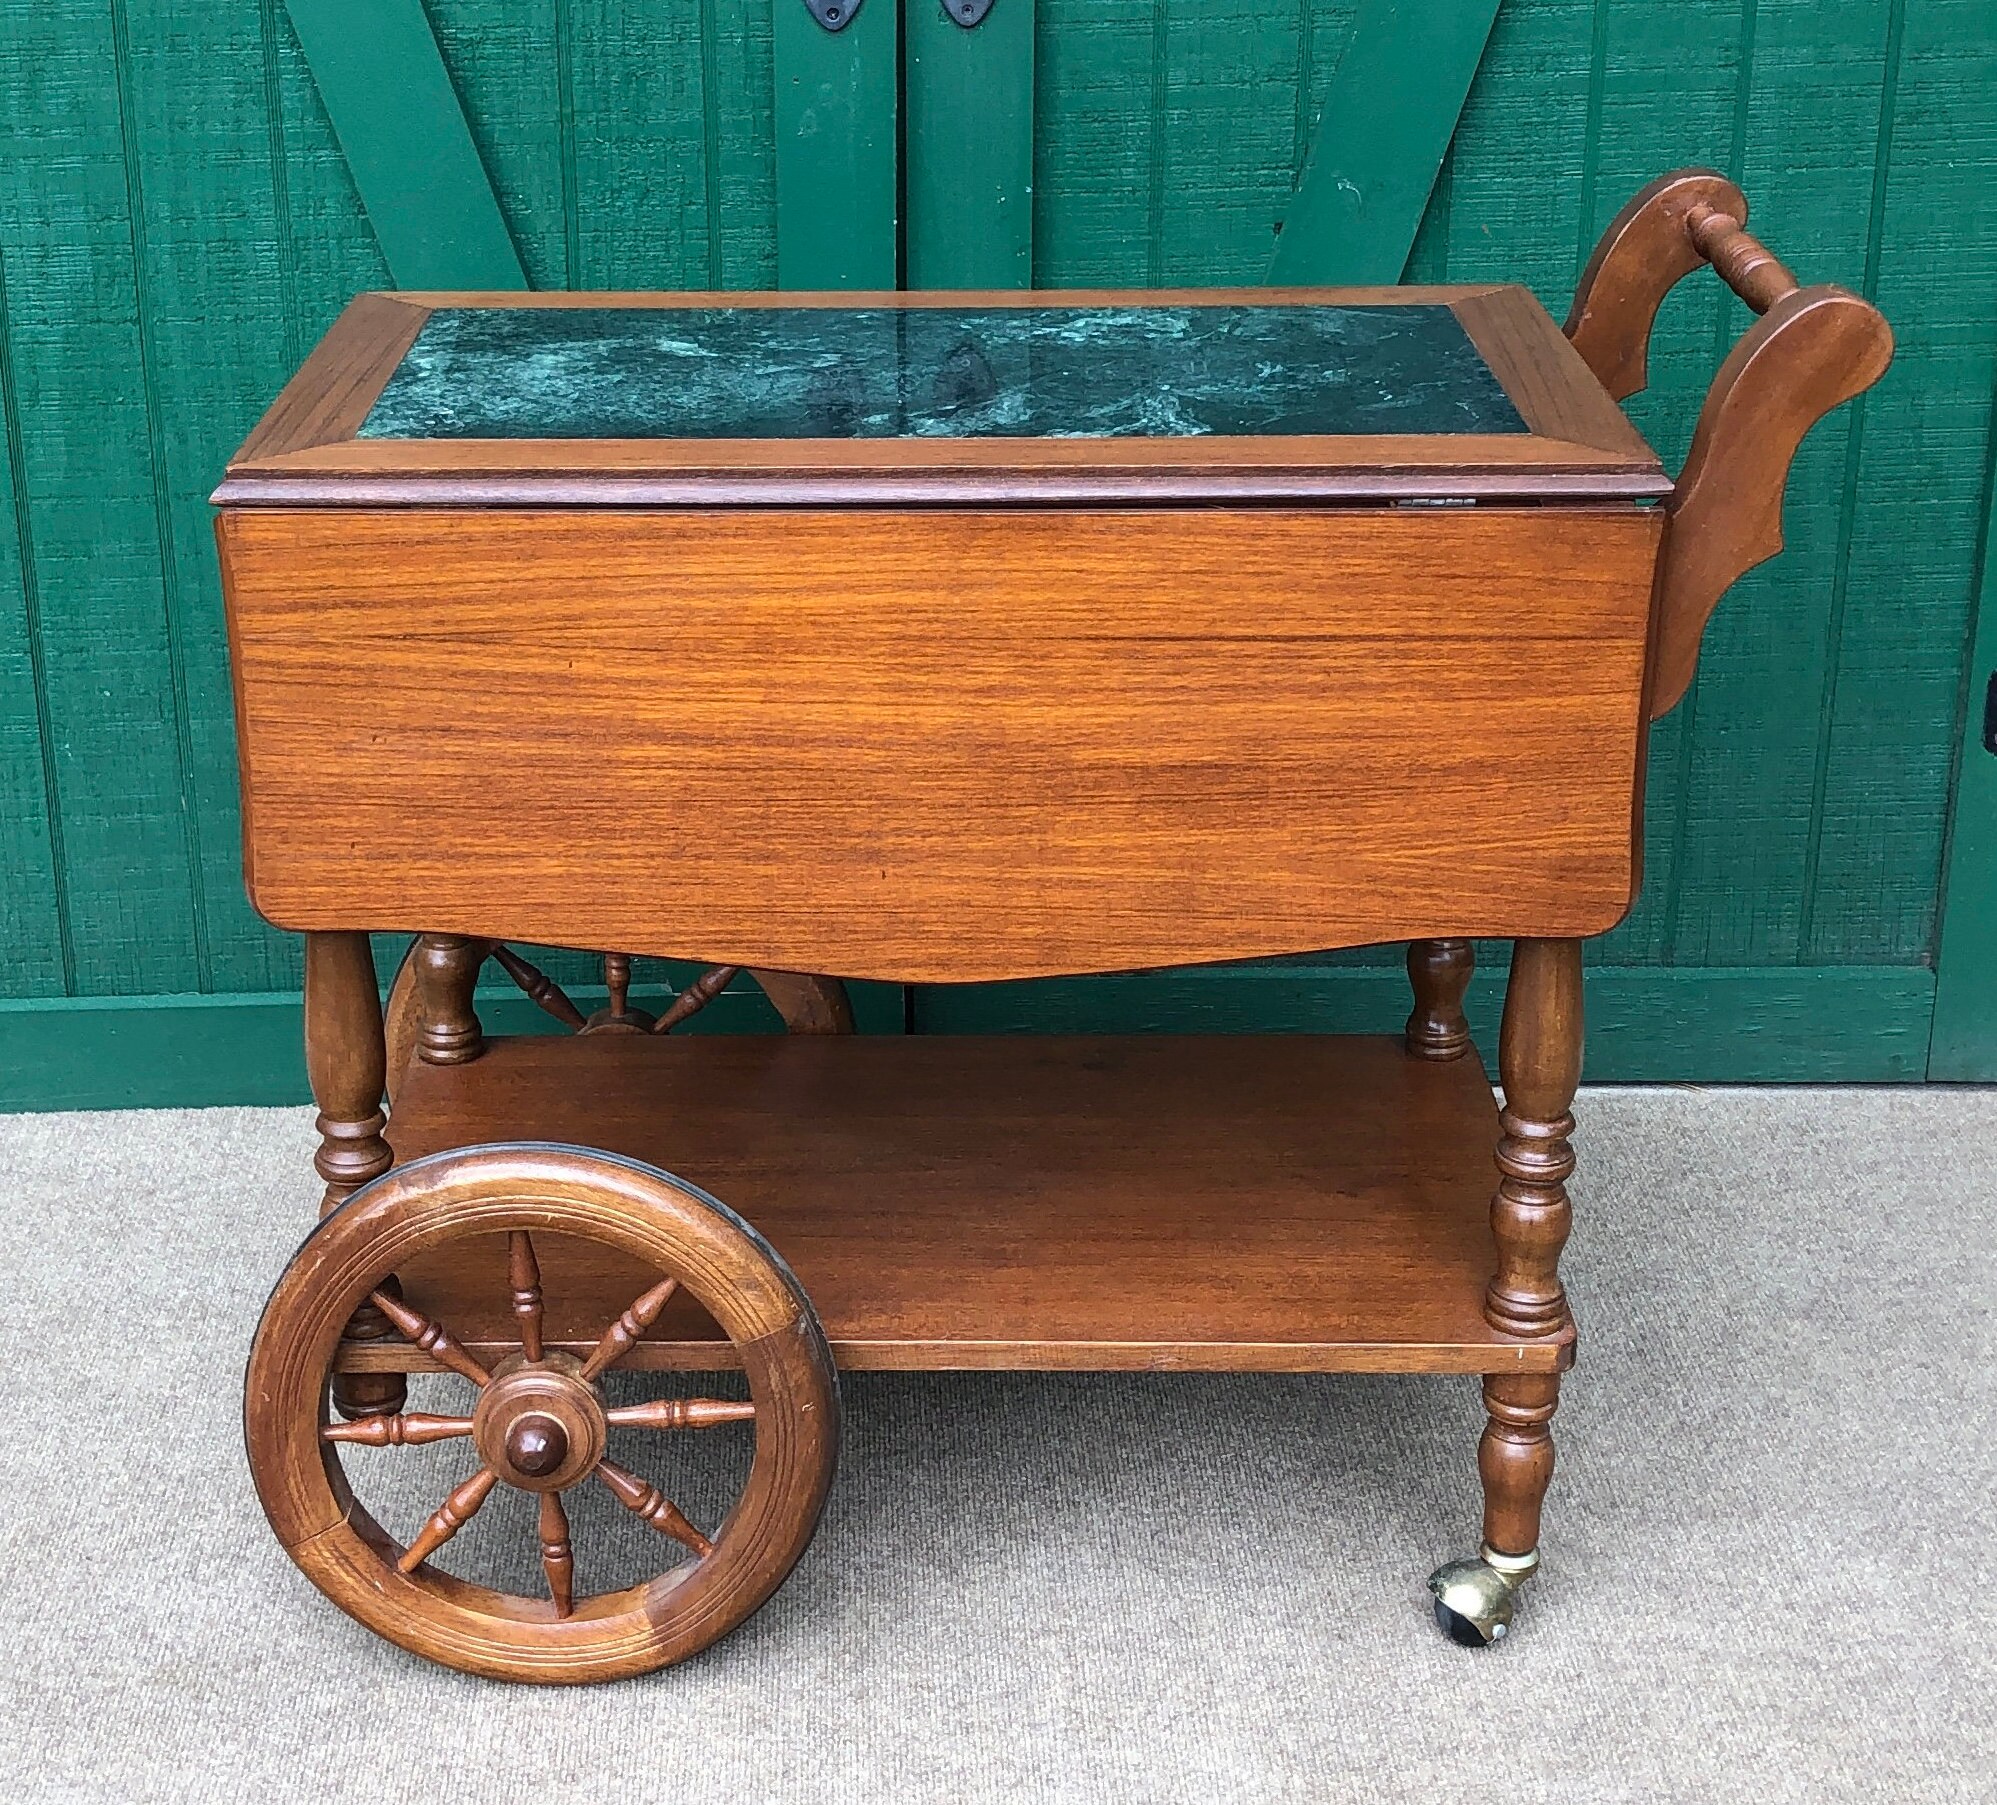 Teak Wood Marble Inlay Tea Cart Bar, Wooden Tea Carts With Wheels